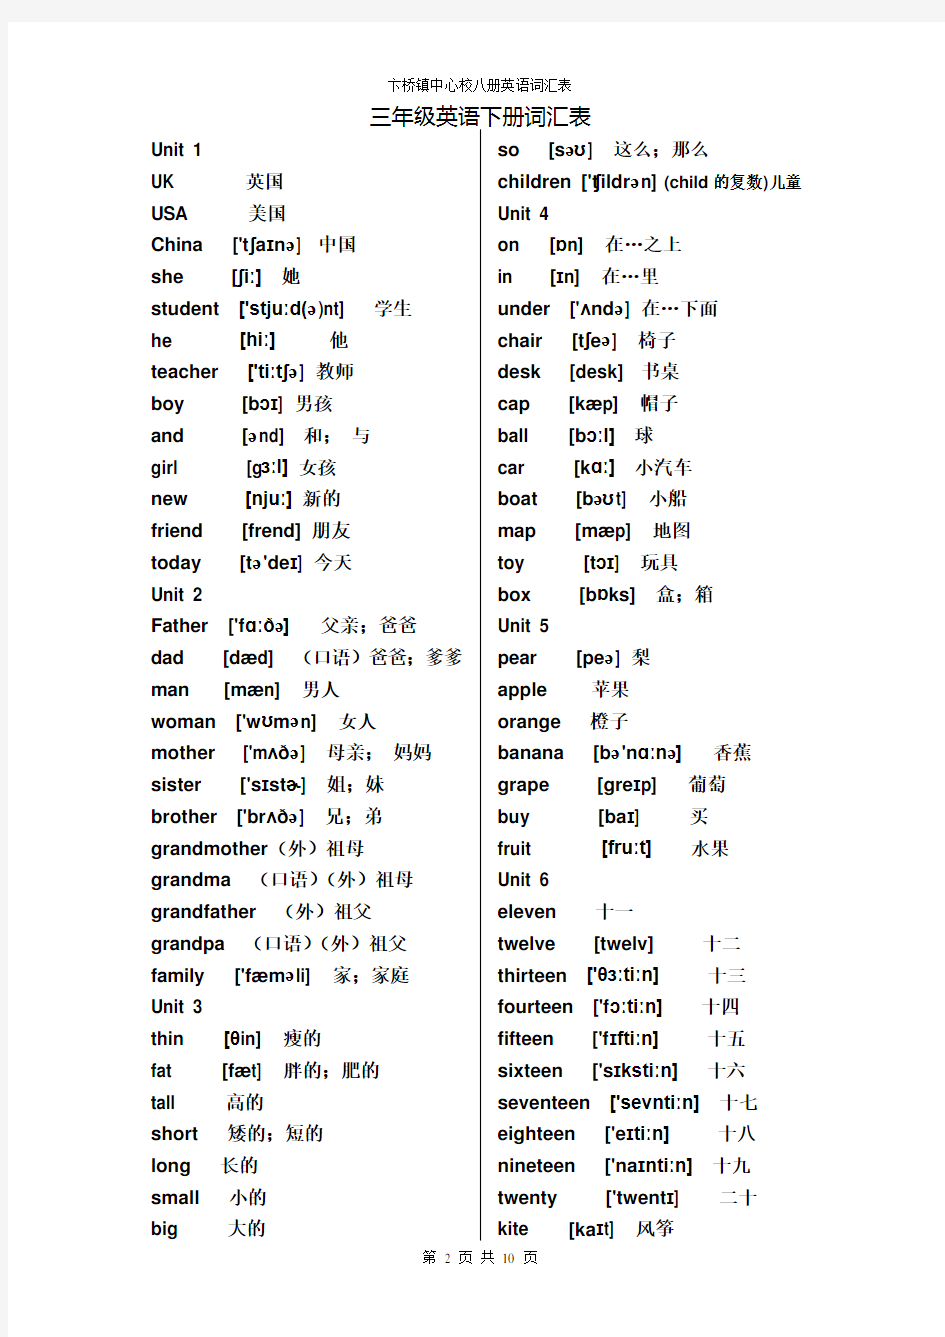 (完整版)新版PEP小学英语(3-6年级)单词表--打印